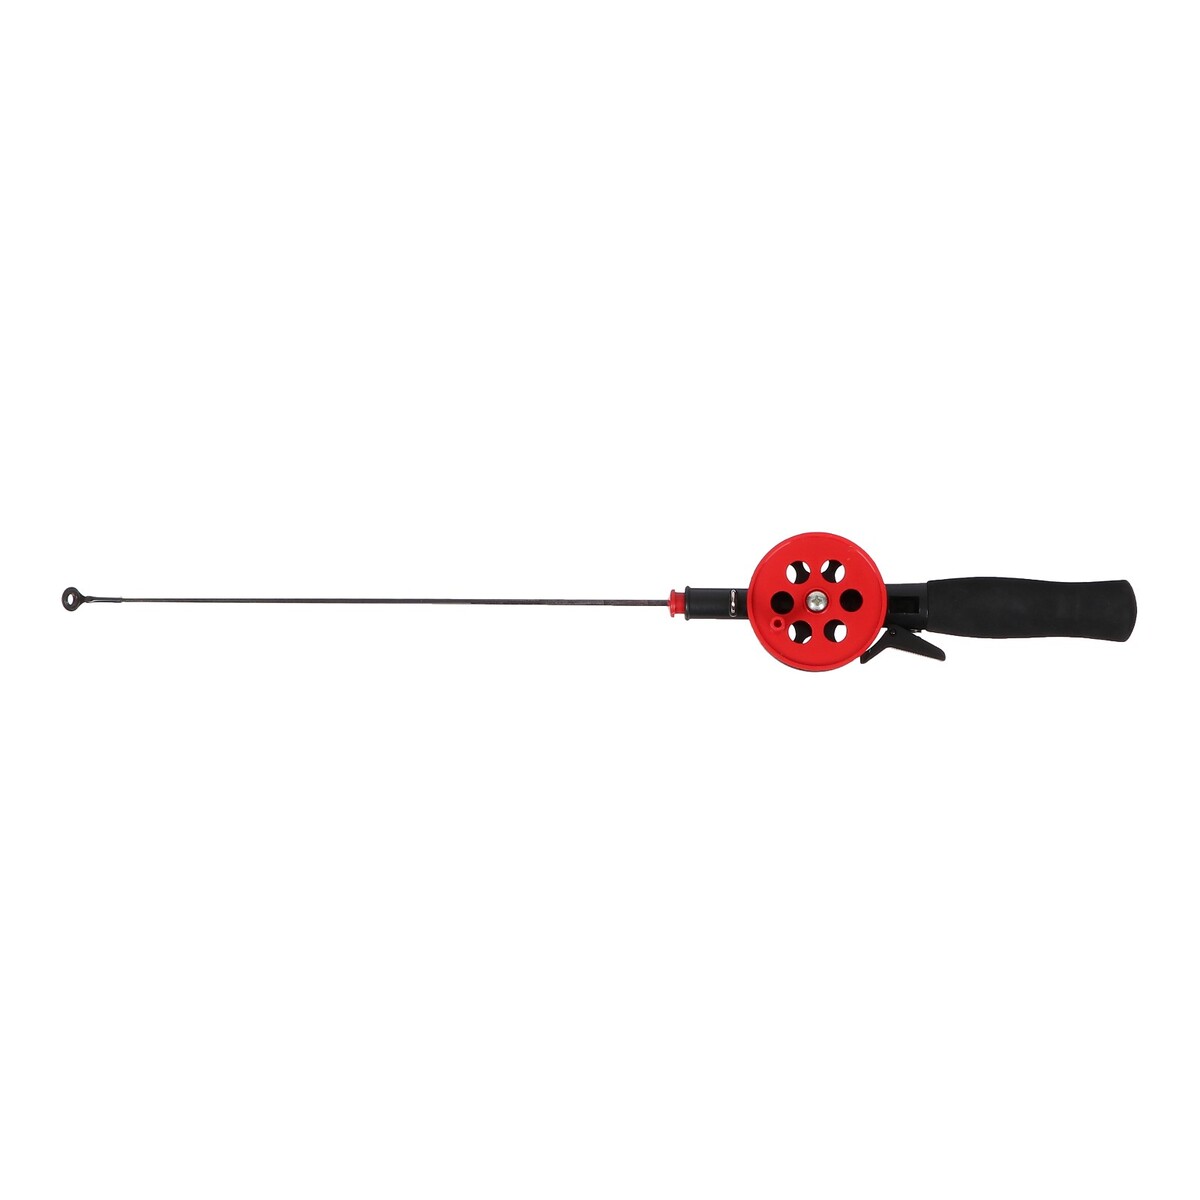 Удочка зимняя, ручка неопрен, длина 42 см, цвет красный, hbf-34(1) удочка зимняя ручка неопрен hfb 5